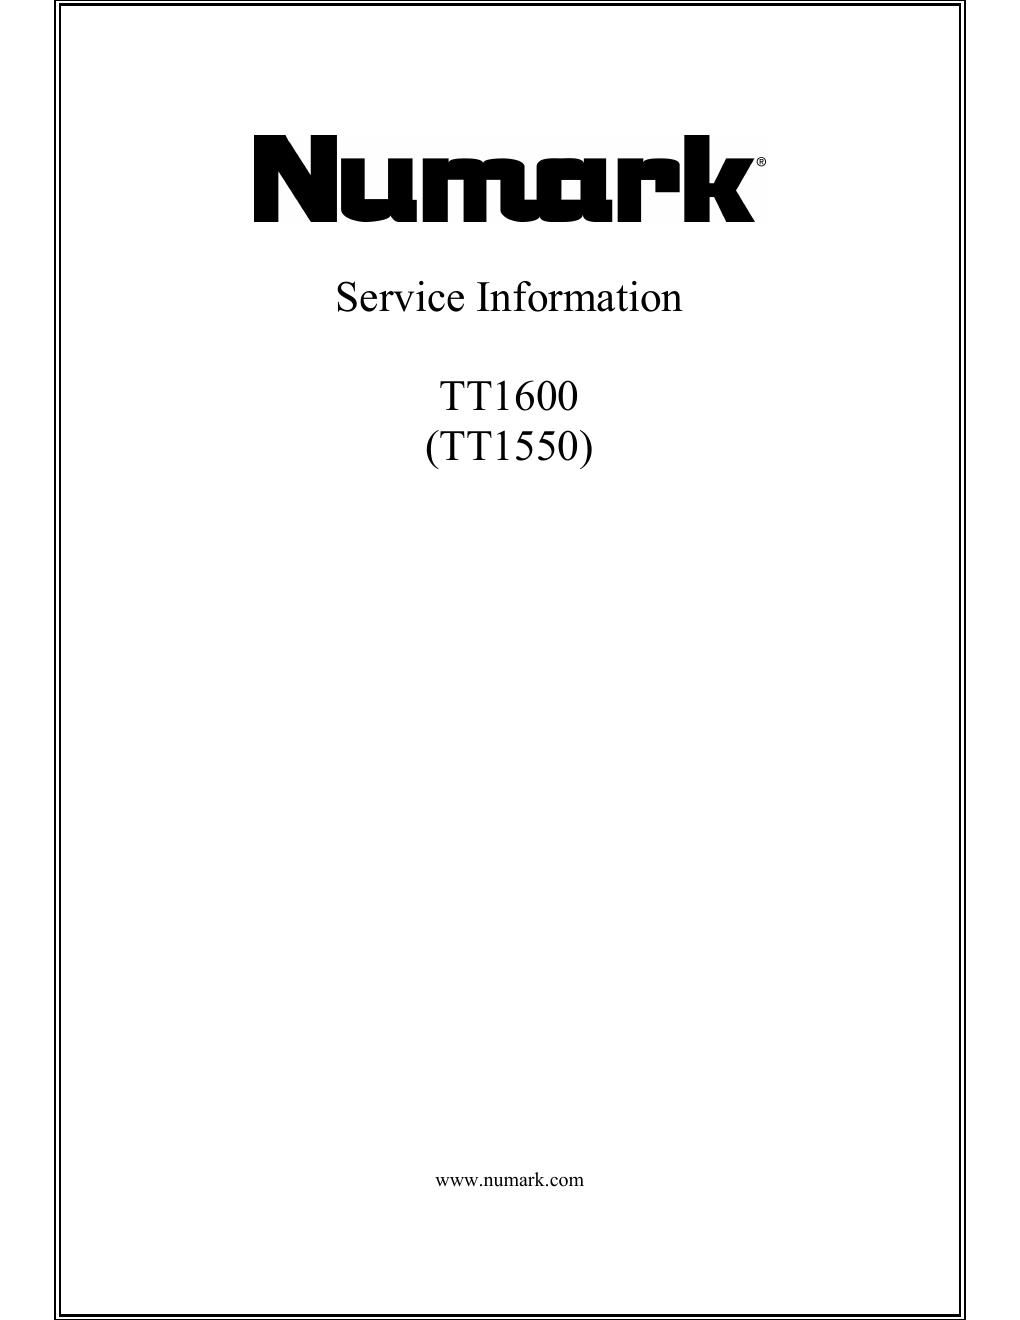 numark tt 1550 1600 service manual